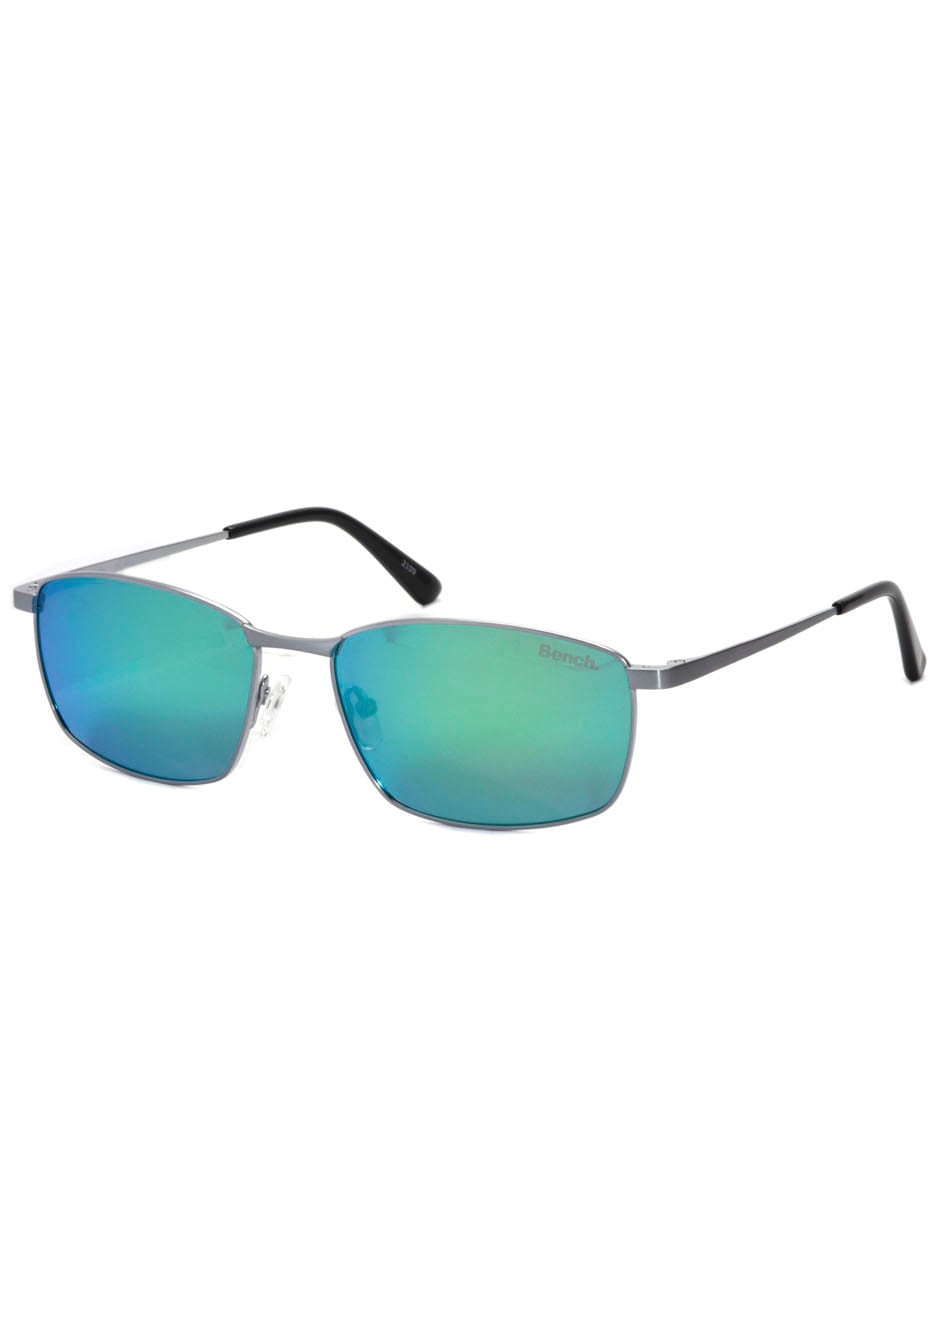 Sonnenbrillen ohne ➤ Mindestbestellwert shoppen